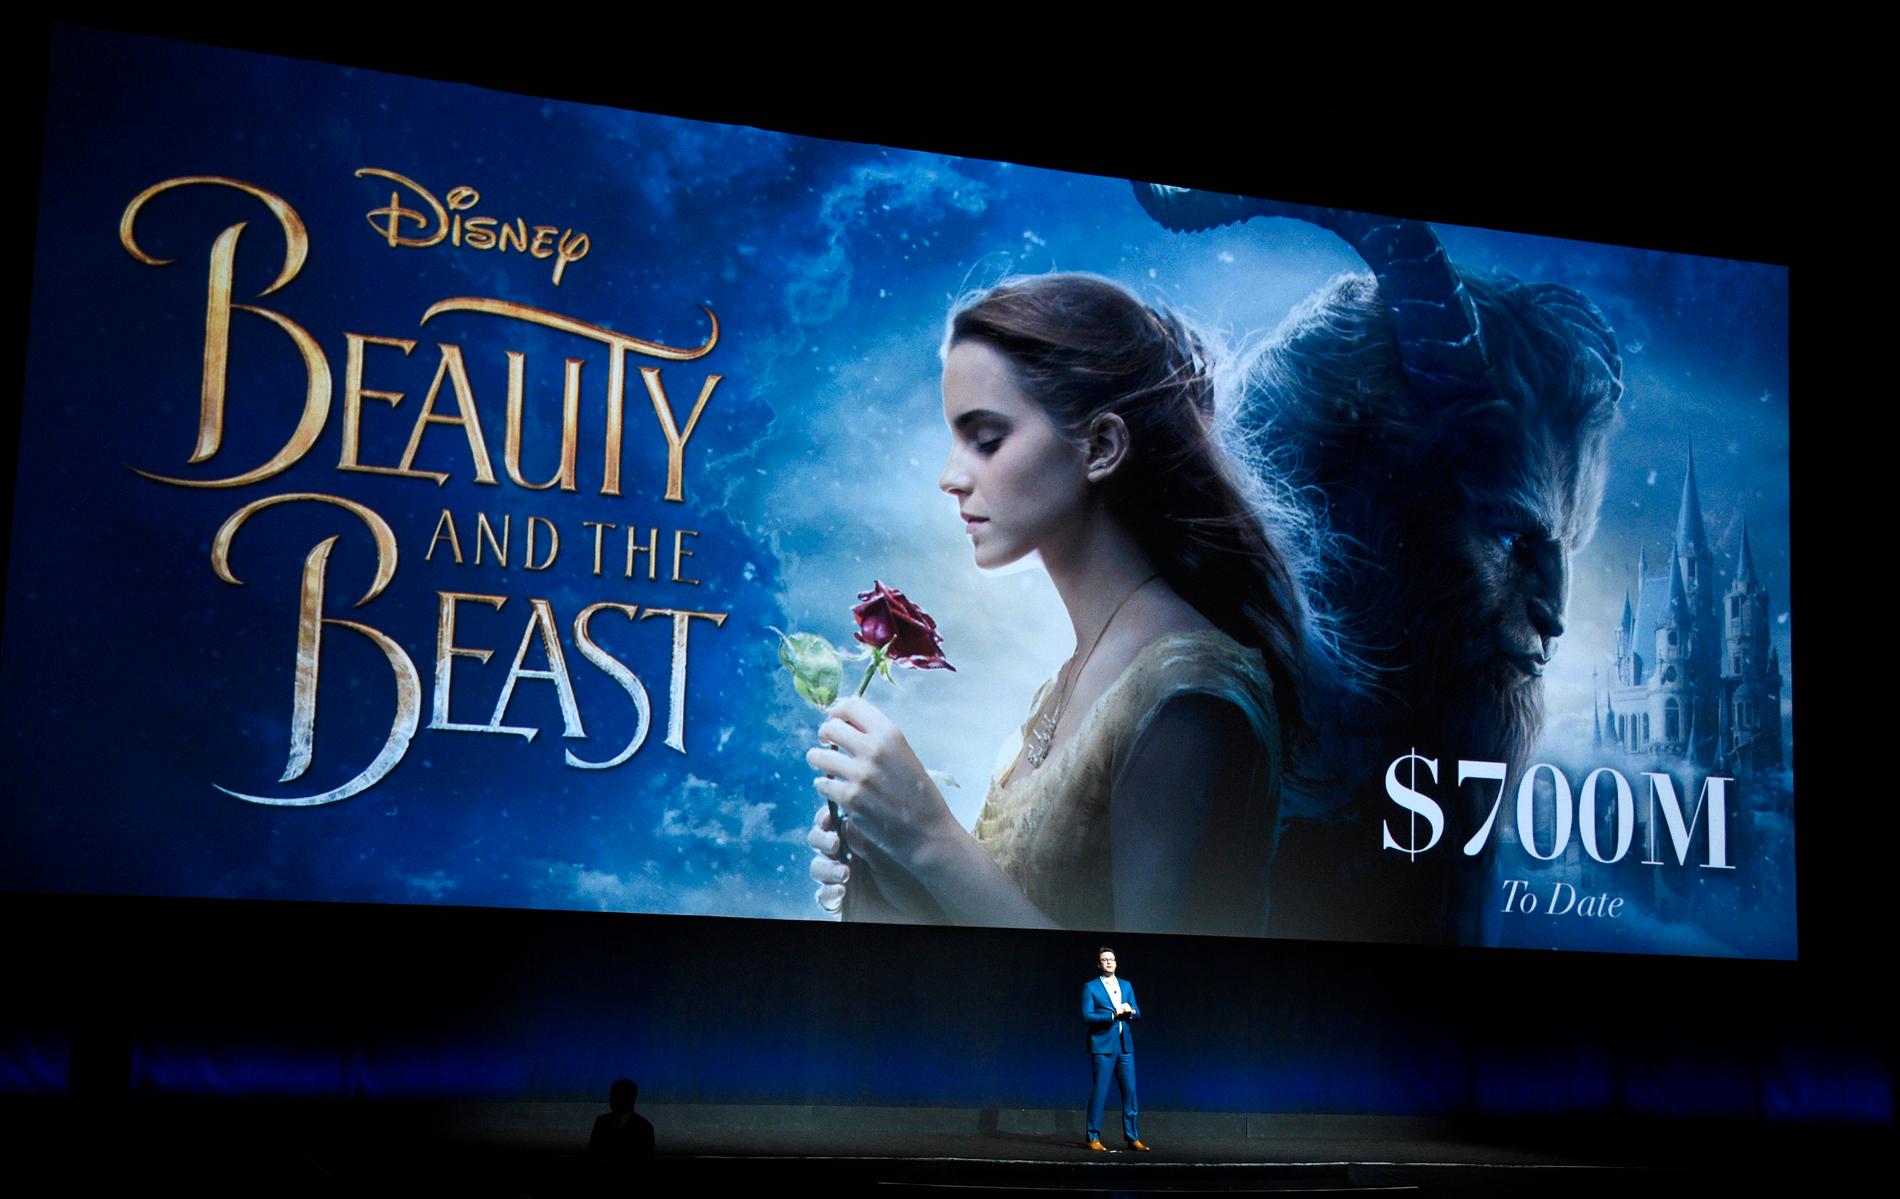 Disney vill ta bort alla sina filmer från Netflix för att starta en egen streamingtjänst. 